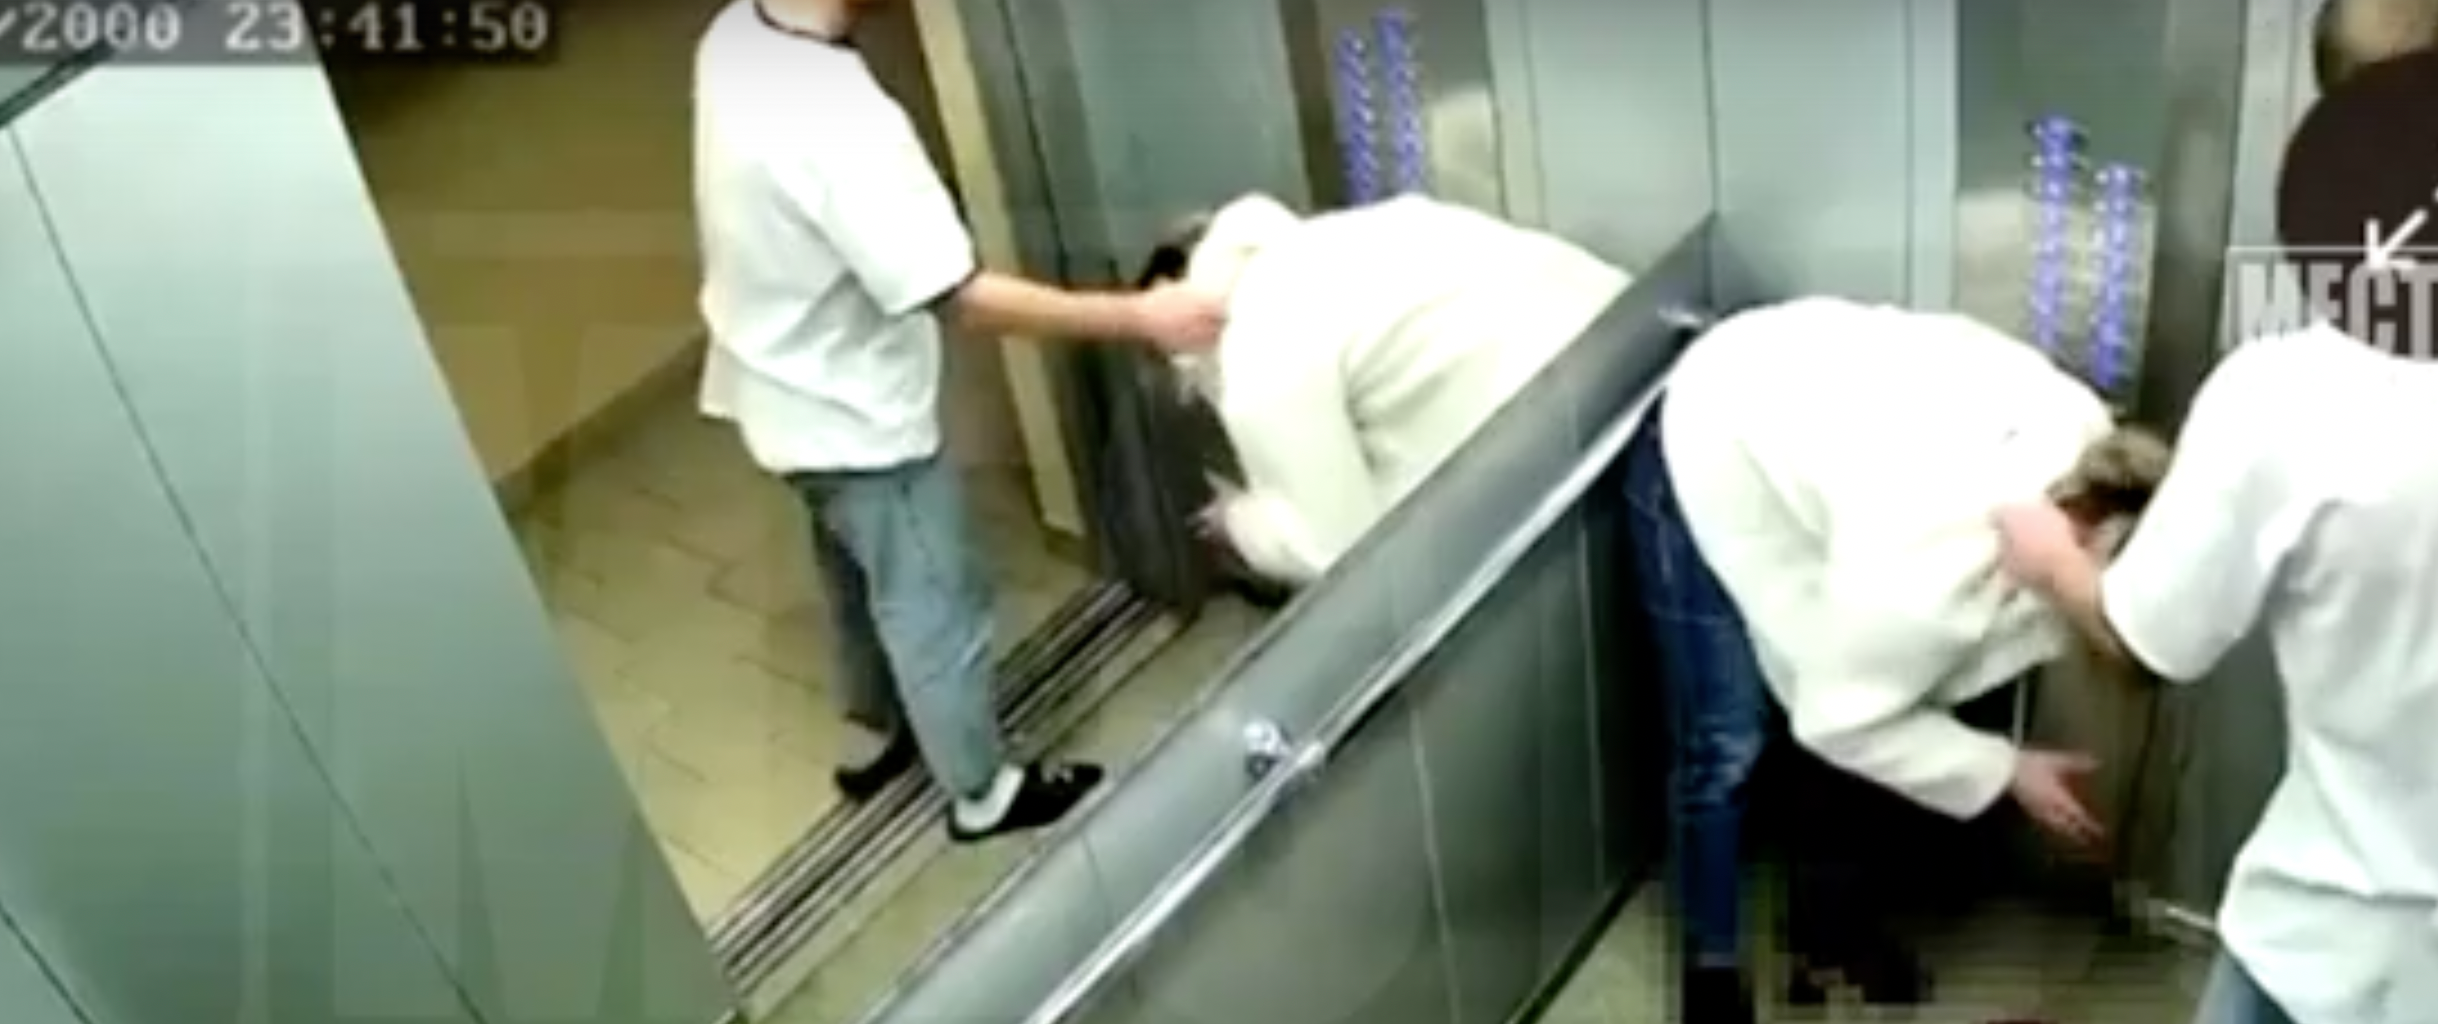 Кировчанин в лифте разбил подруге нос до крови: видео